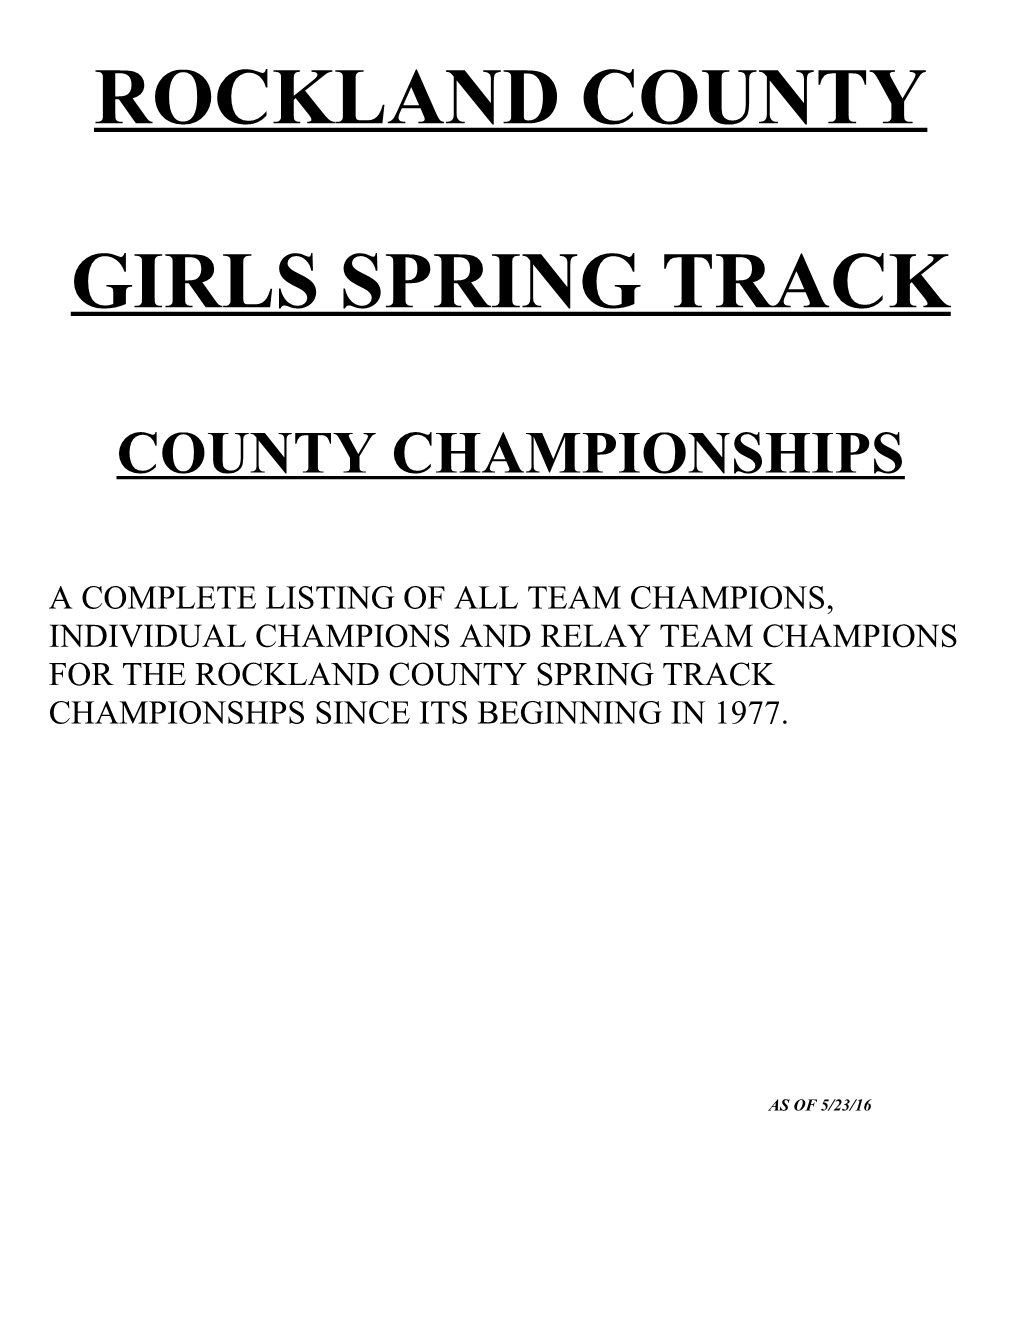 Girls Spring Track